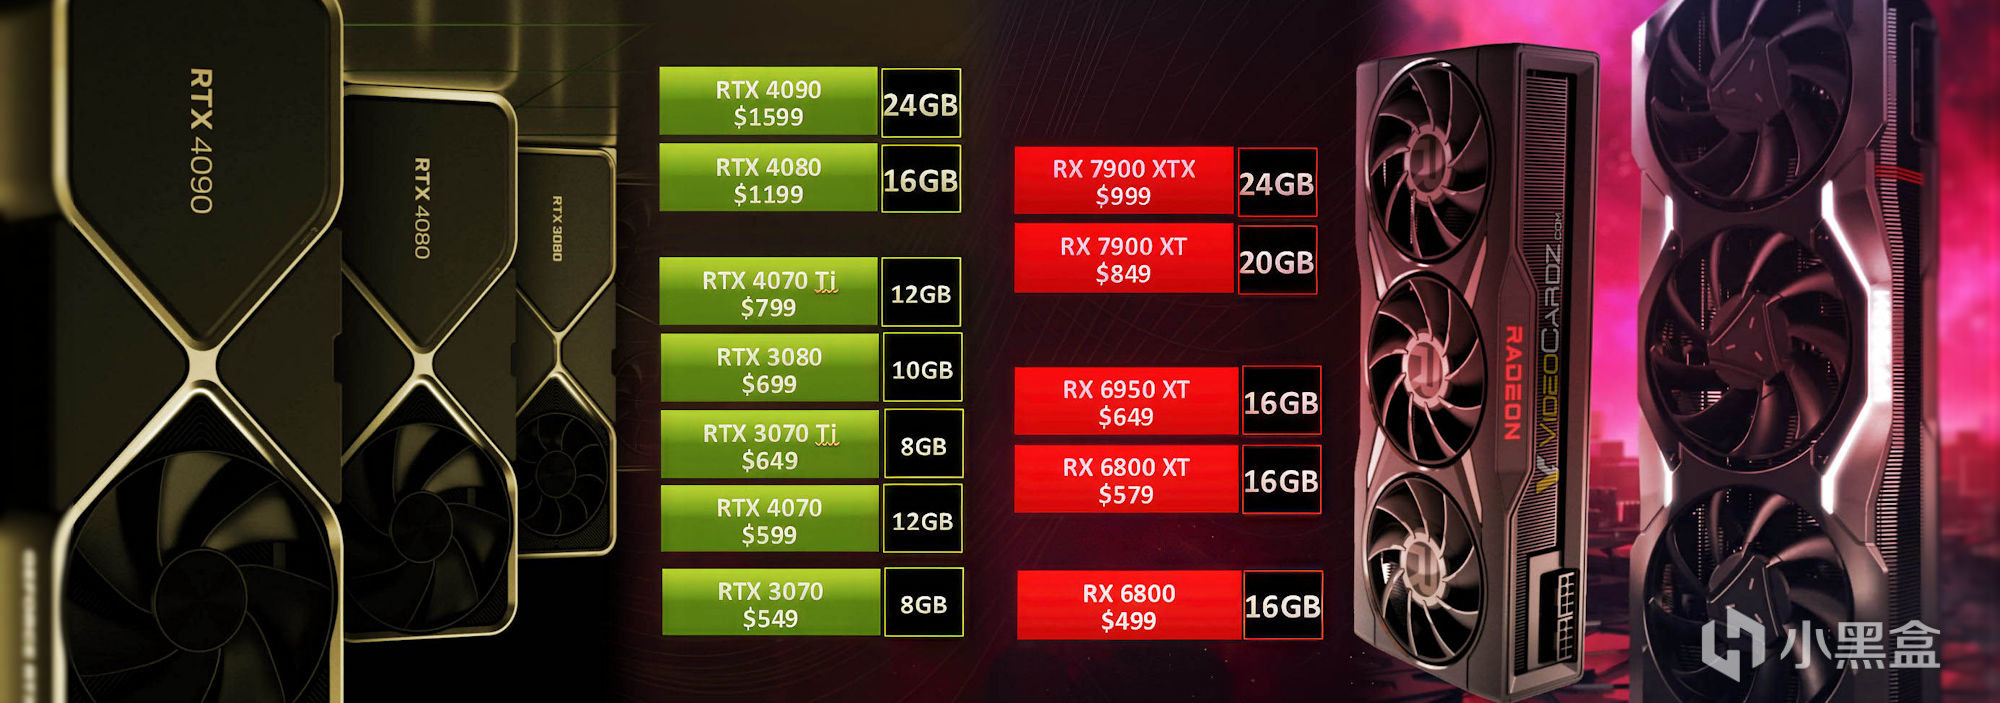 RTX50系显卡推迟到2025年；RX 6800降至2999元；Ally掌机仅3999元